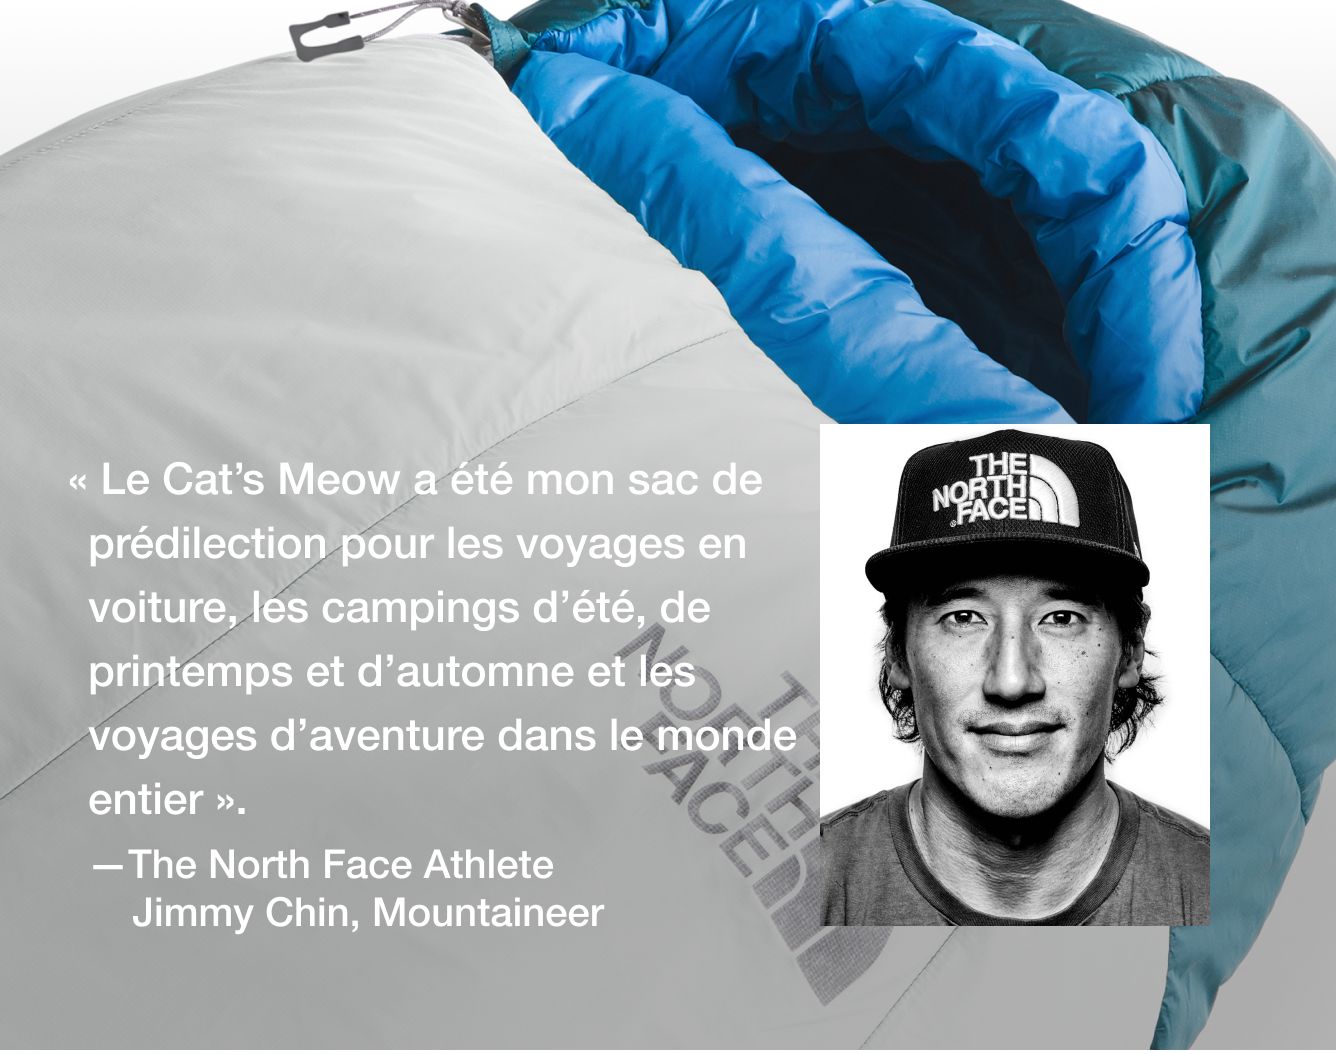  « Le Cat’s Meow a été mon sac de prédilection pour les voyages en voiture, les campings d’été, de printemps et d’automne et les voyages d’aventure dans le monde entier ».   – Jimmy Chin, athlète The North Face  